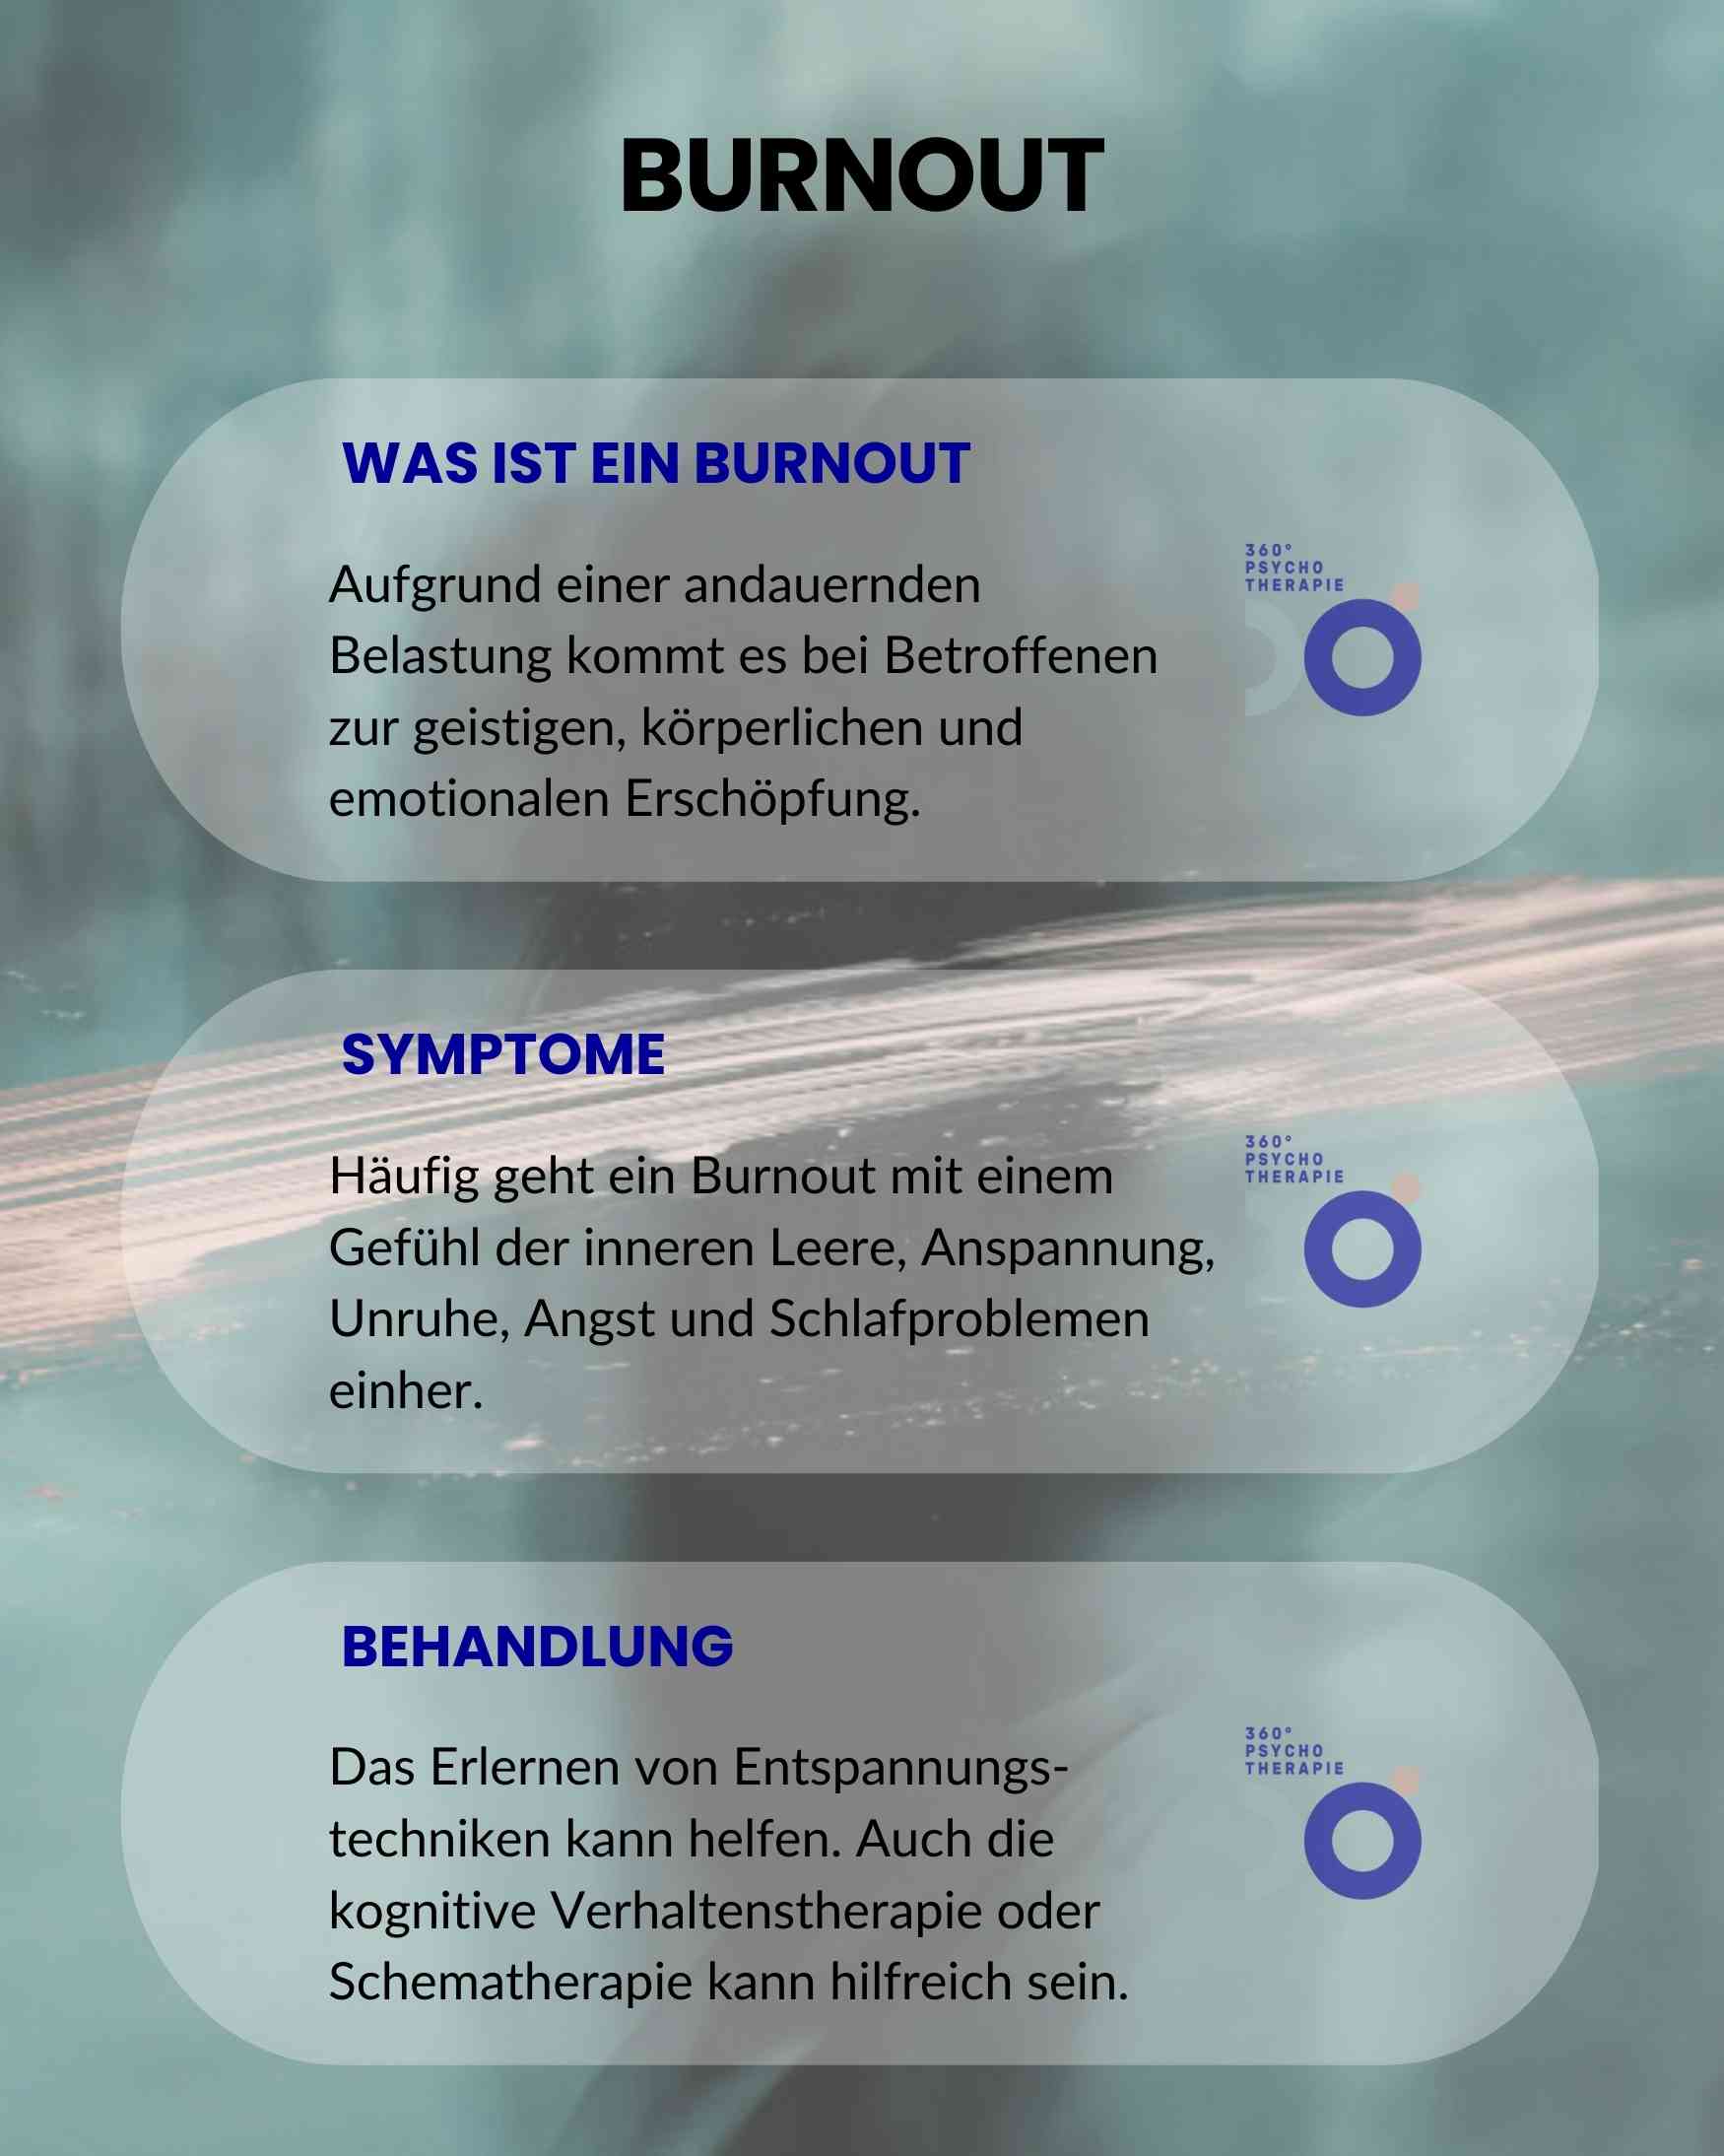 Infografik zum Thema Burnout mit den entsprechenden Symptomen und Behandlungsarten.